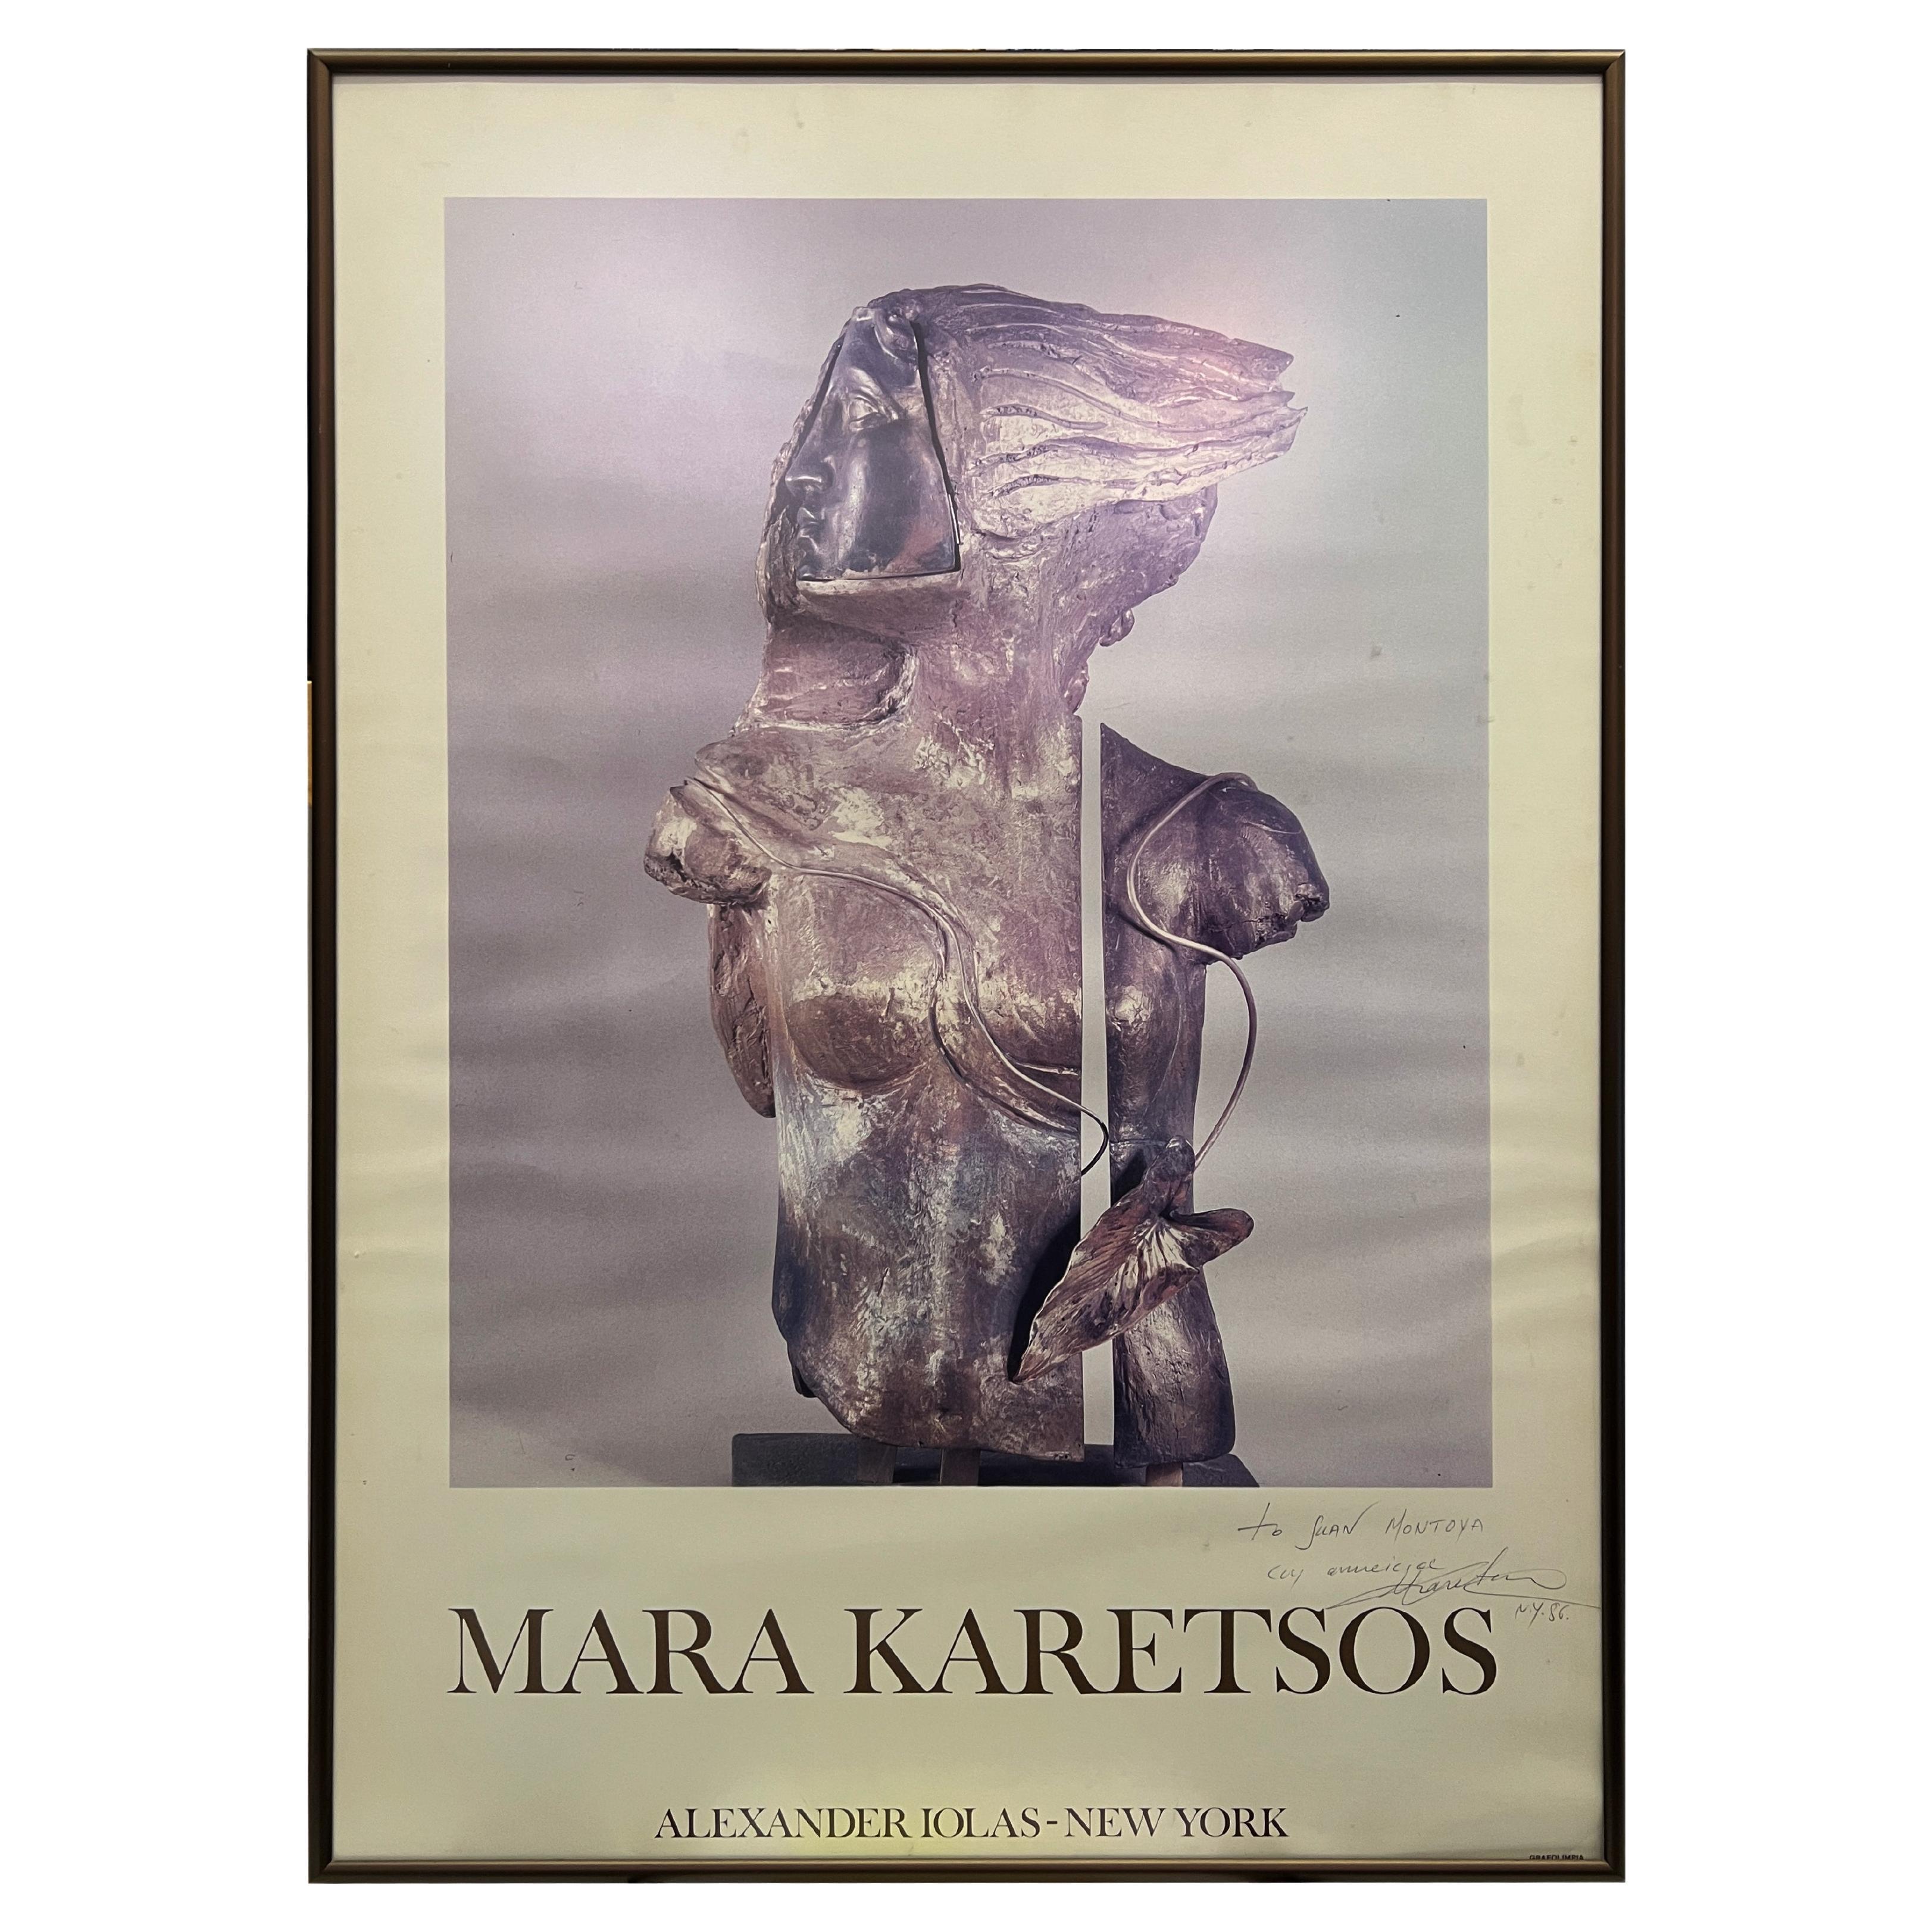 Affiche de la Galerie Alexandre Iolas Mara Karetsos des années 1970